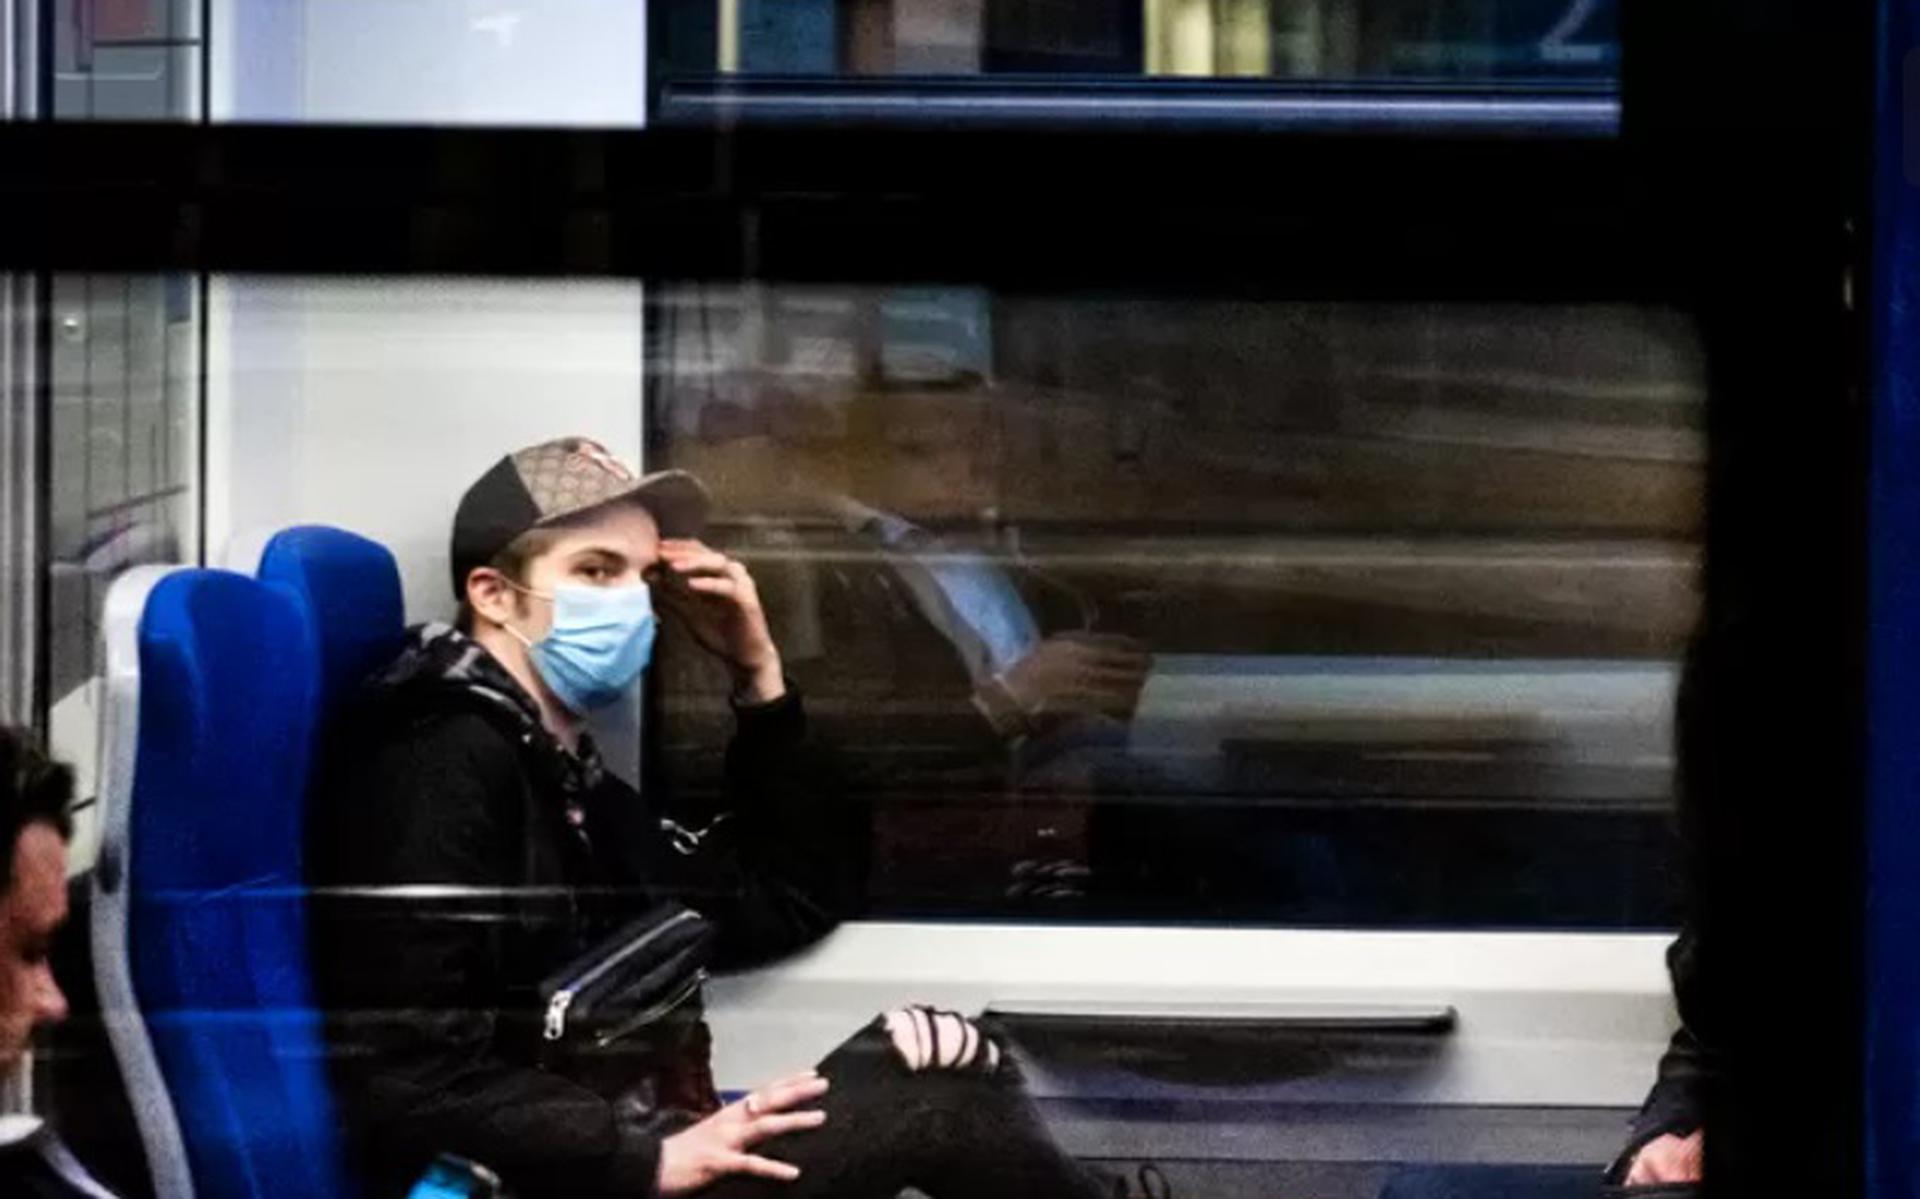 Mensen met mondkapjes op in de trein. Vanaf 1 juni is het verplicht om een mondkapje te dragen als je het openbaar vervoer wilt gebruiken. Wie dat niet doet, riskeert een boete van 95 euro. 